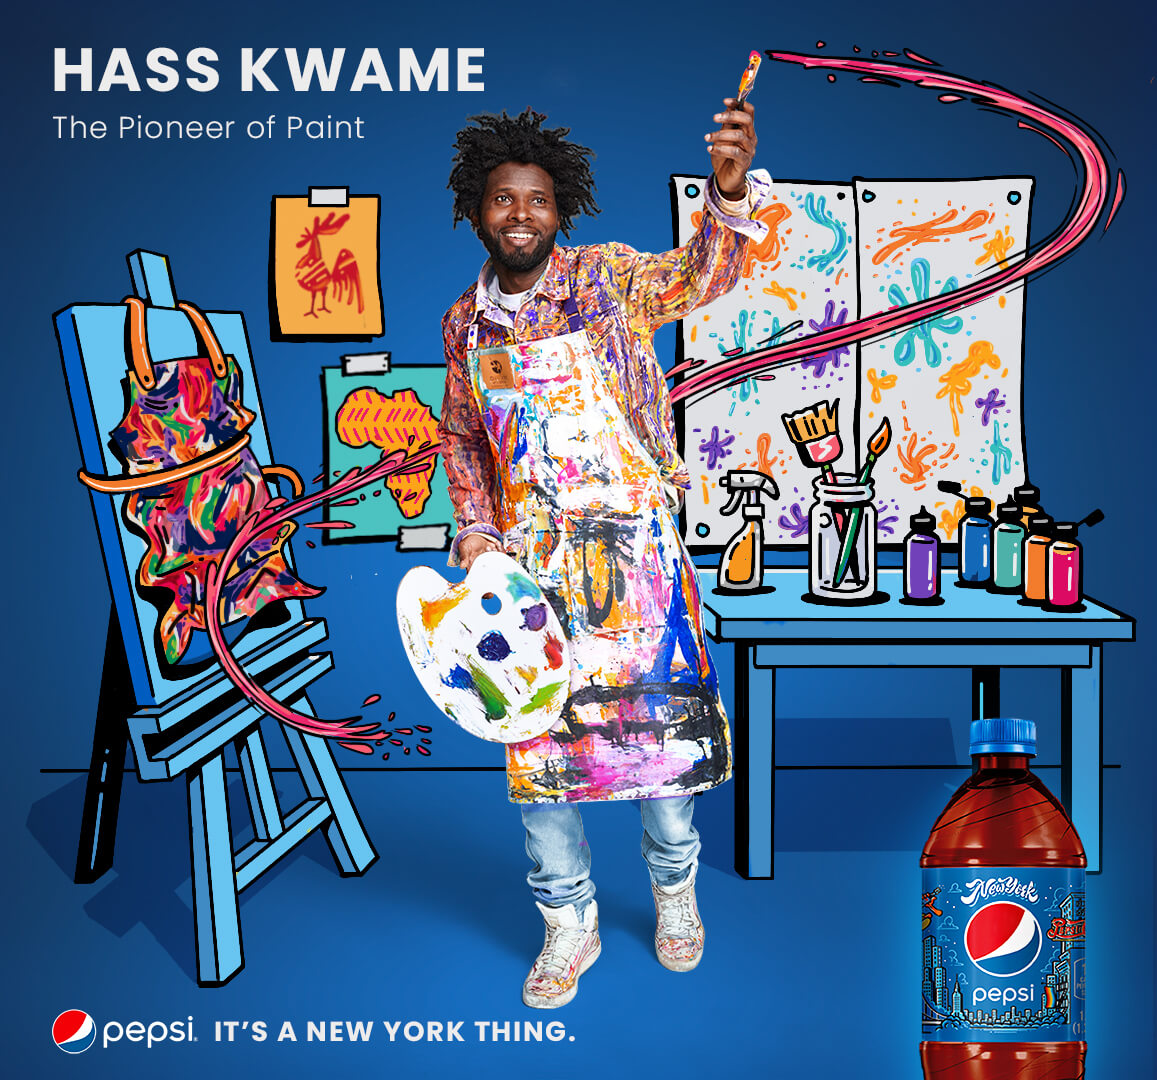 Kwame ‘Hass’ Thimbiano